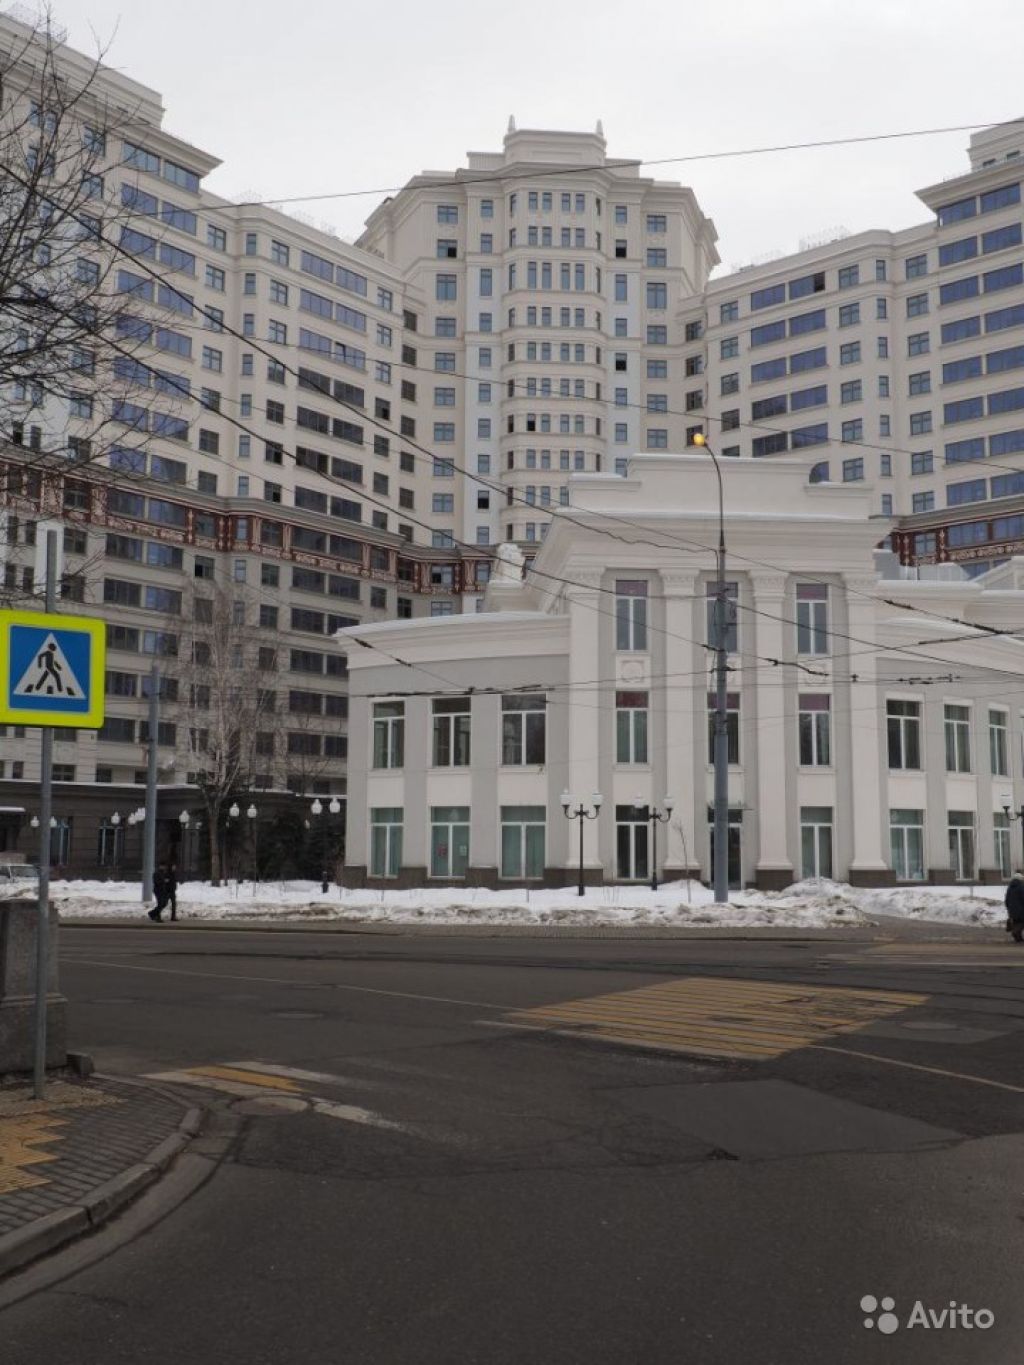 Продам квартиру 4-к квартира 155 м² на 7 этаже 18-этажного монолитного дома в Москве. Фото 1